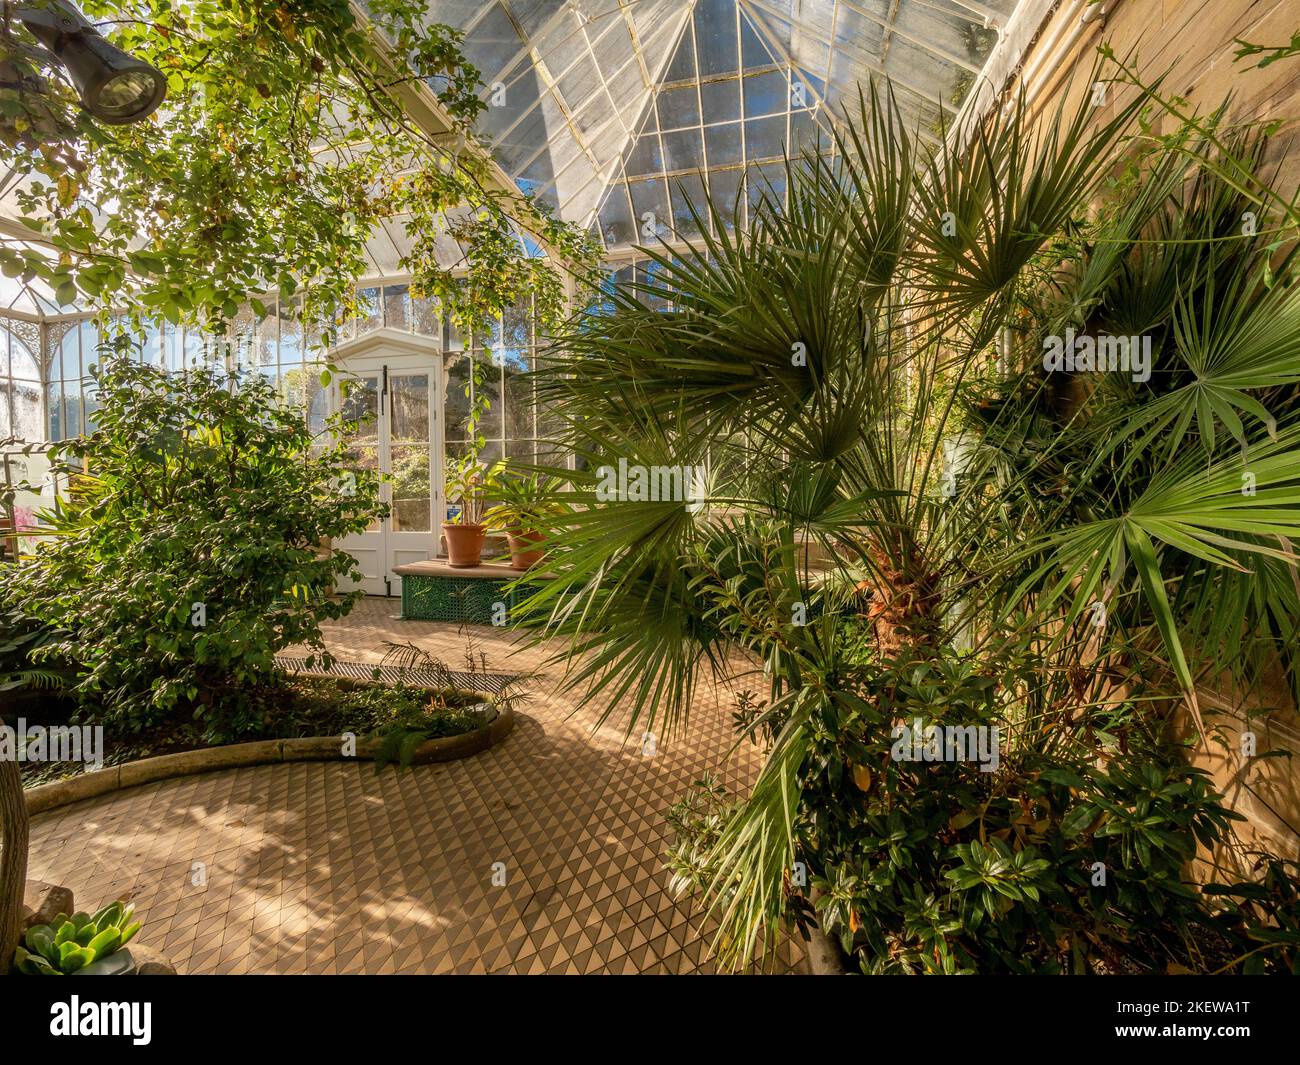 Les plantes poussent dans le conservatoire victorien restauré des jardins du château de Wentworth, avec ses carreaux de céramique géométrique. ROYAUME-UNI. Banque D'Images